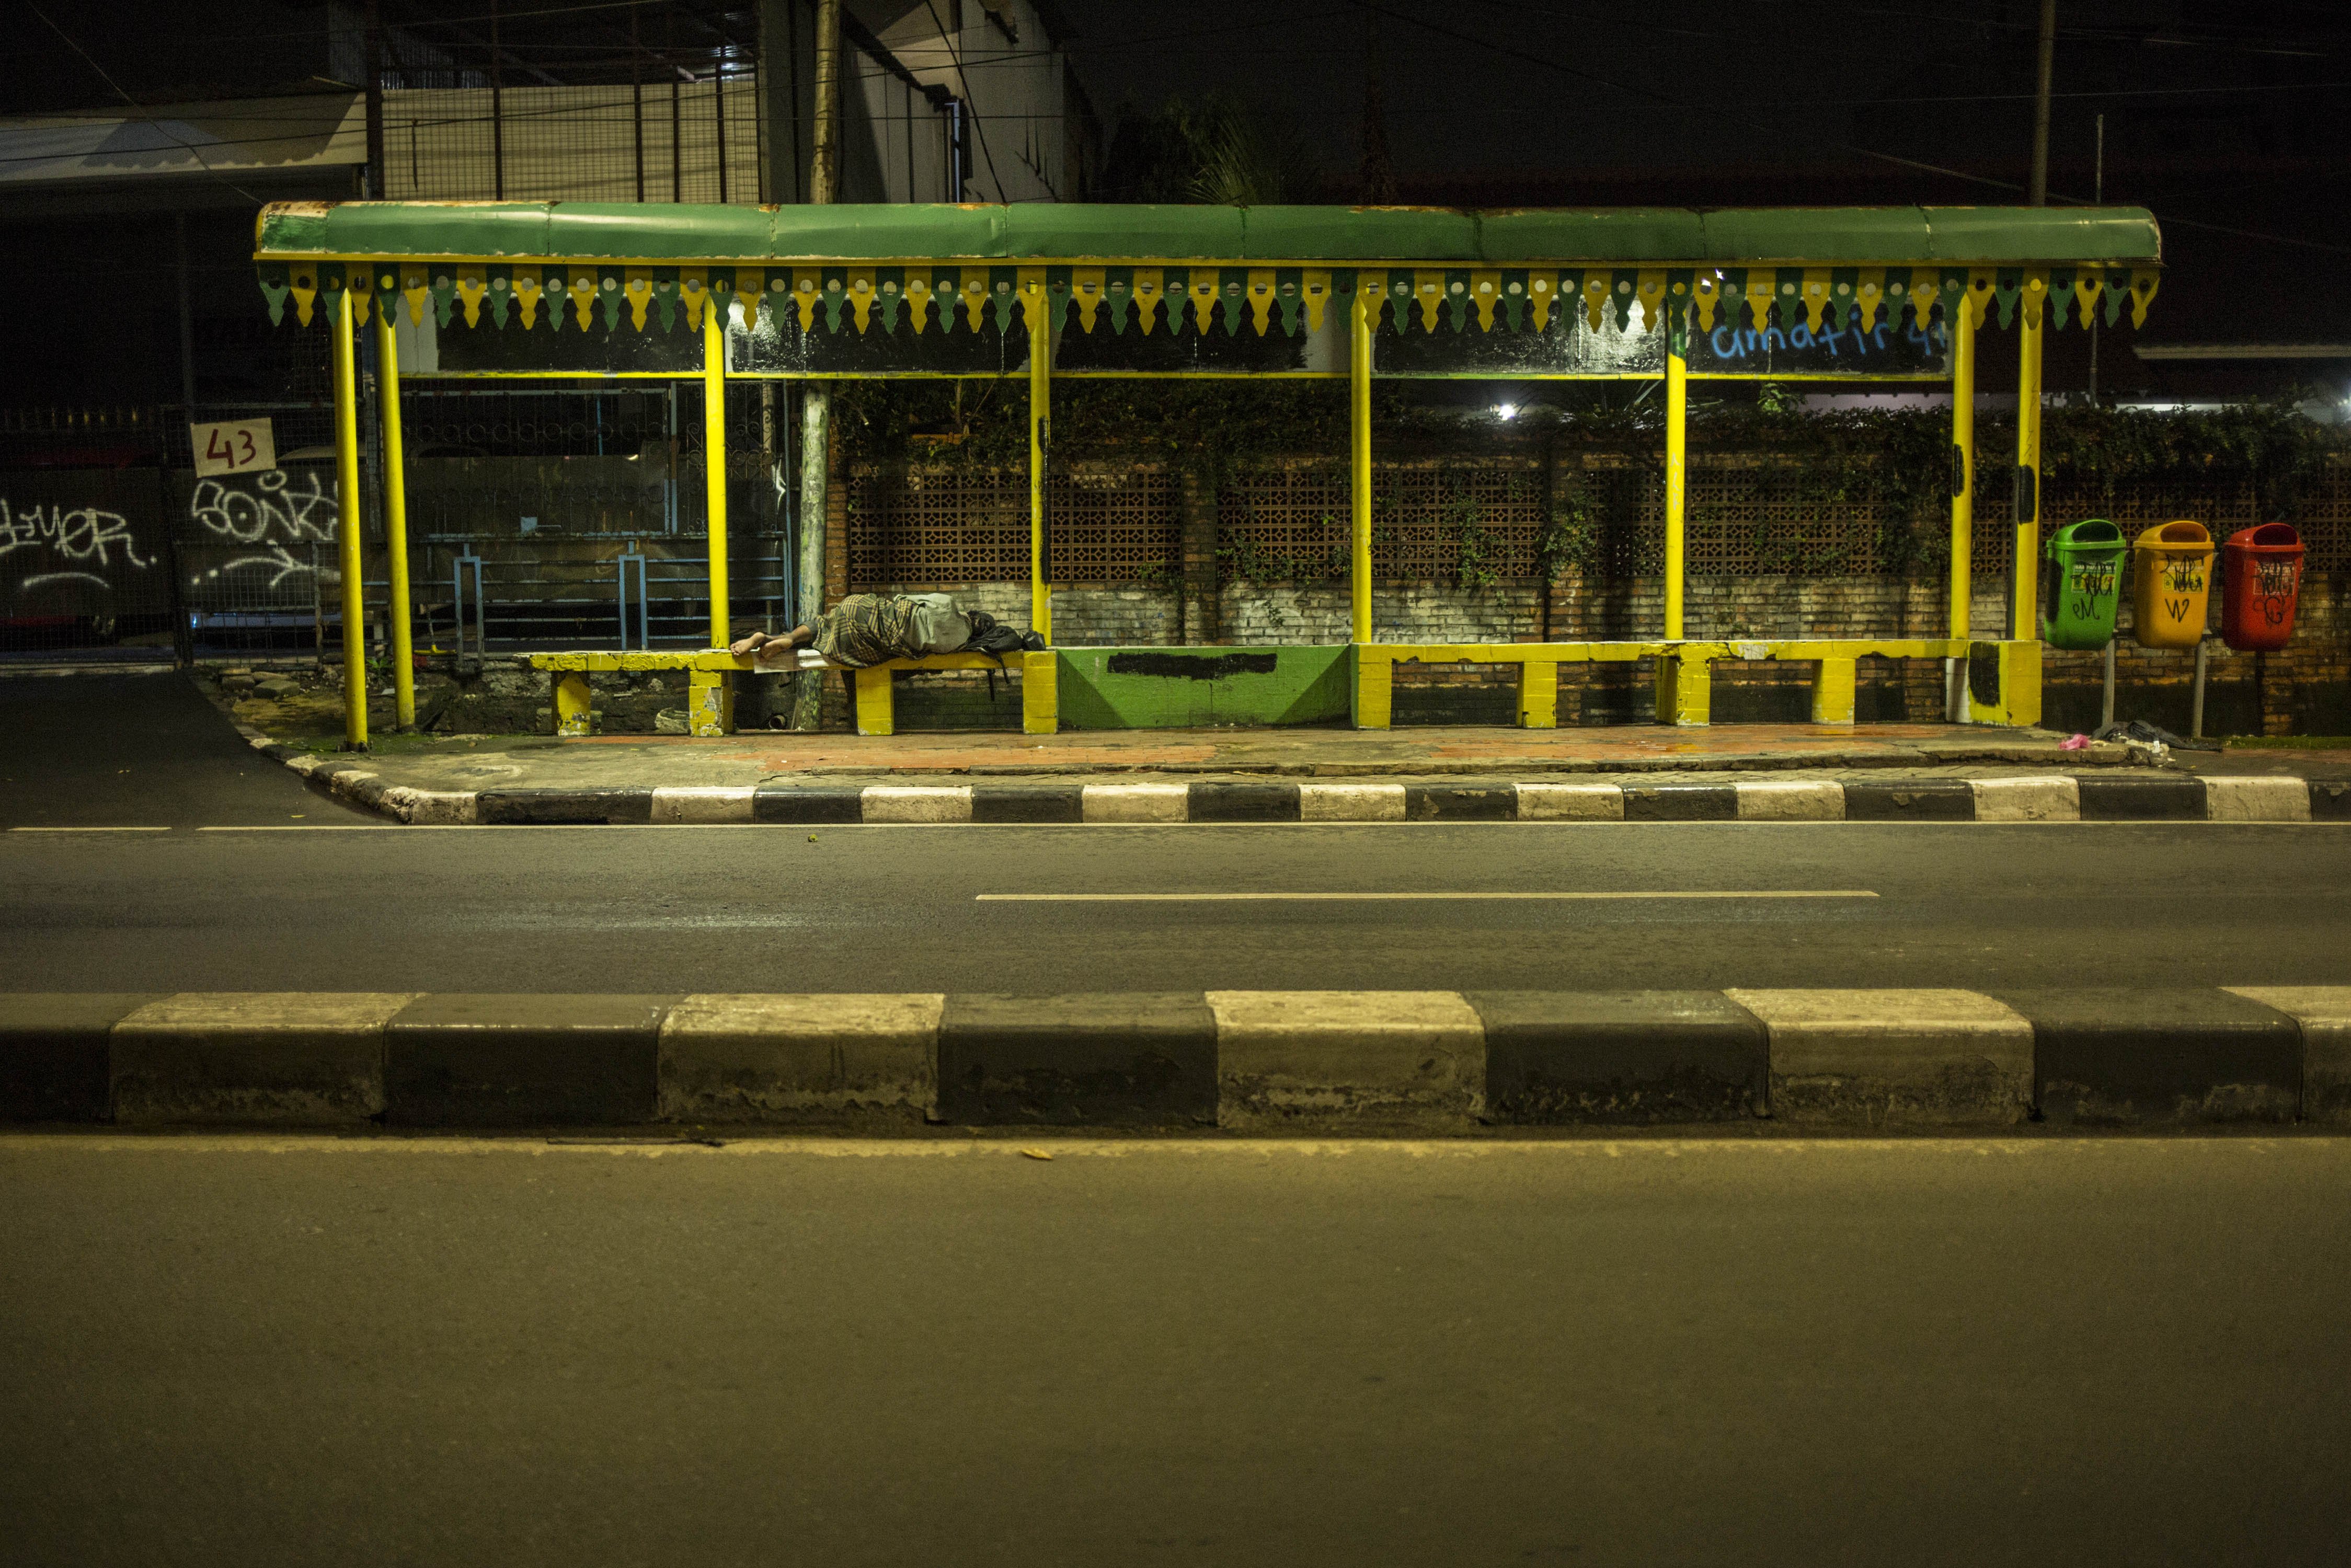 Tuna wisma tertidur di Halte Bus di Jalan Fatmawati, Jakarta Selatan, Selasa (14/4/2020). Pemberlakuan Pembatasan Sosial Bersekala Besar (PSBB) membuat jalan protokol Jakarta dan pusat keramaian tampak lenggang.